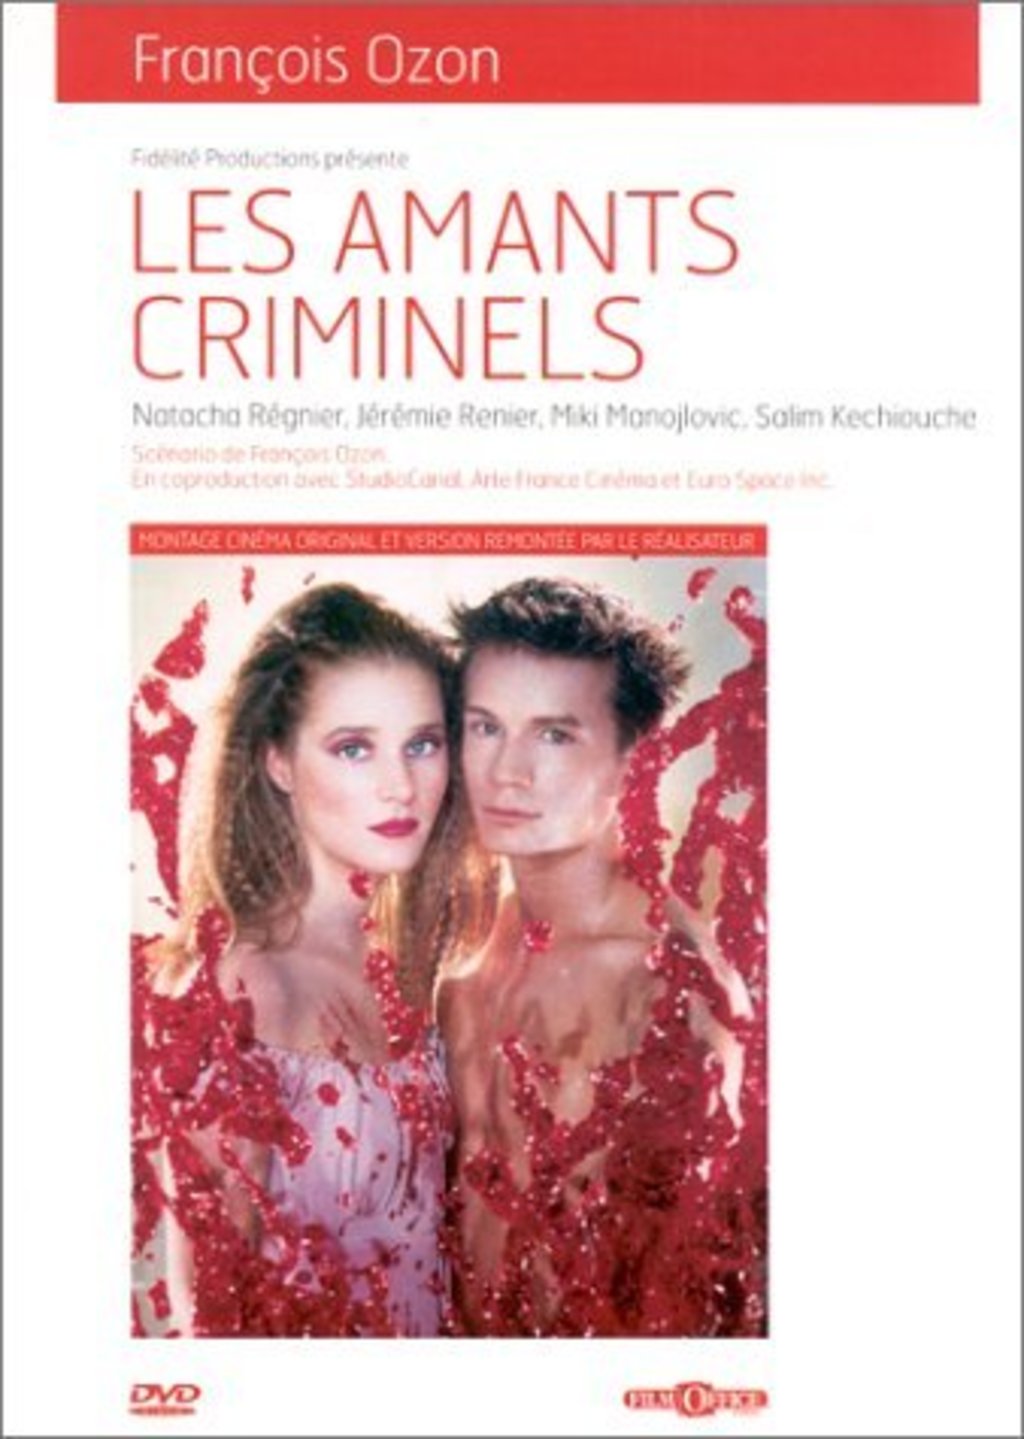 Криминальные любовники. Криминальные любовники(1999) les amants Criminels. «Любовники» (les amants) постеры. Франсуа озона «криминальные любовники» рецензия.